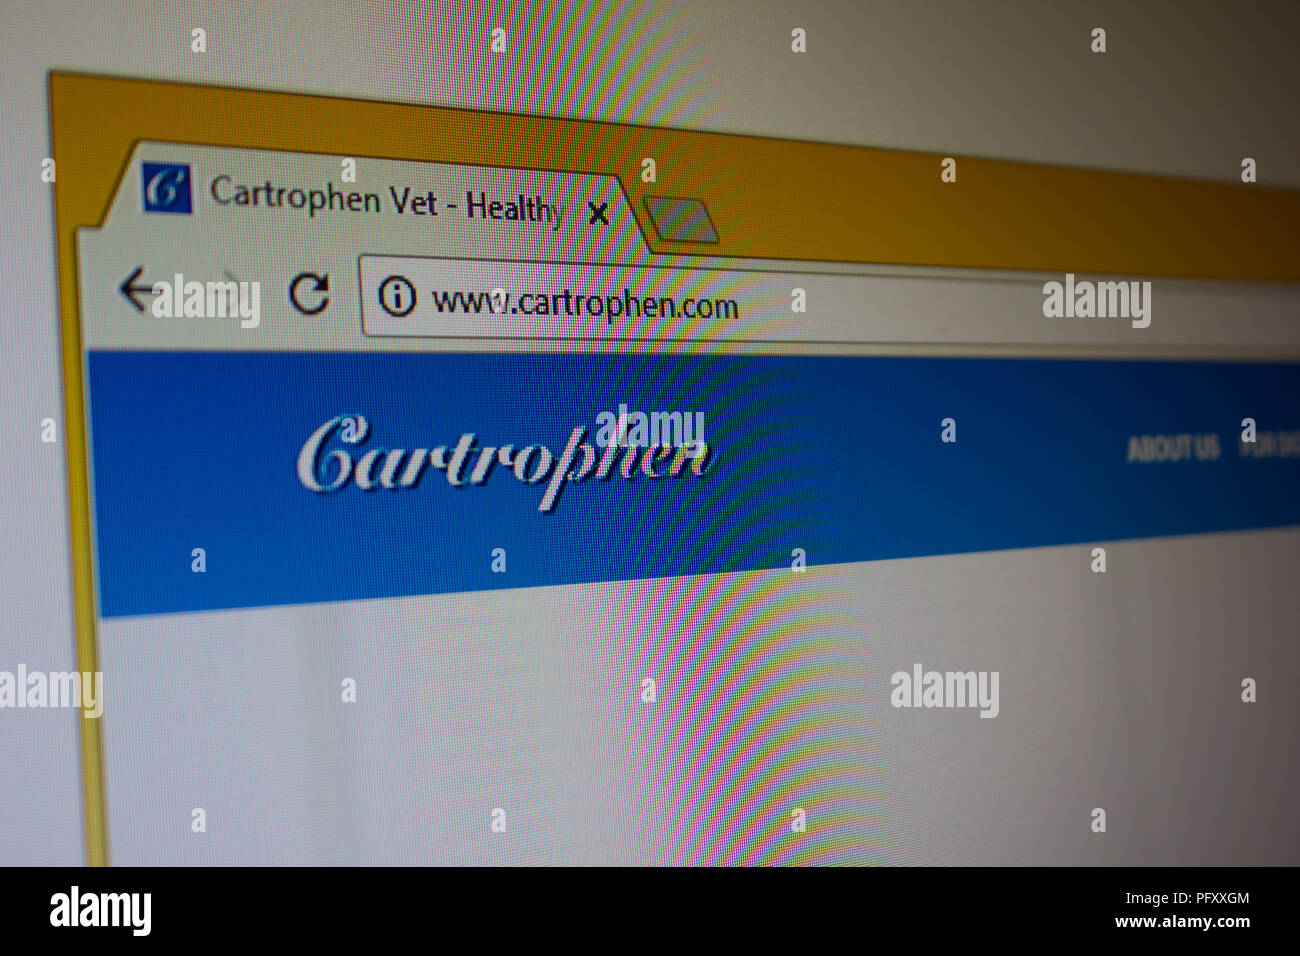 Cartrophen Vet Website homepage Stock Photo